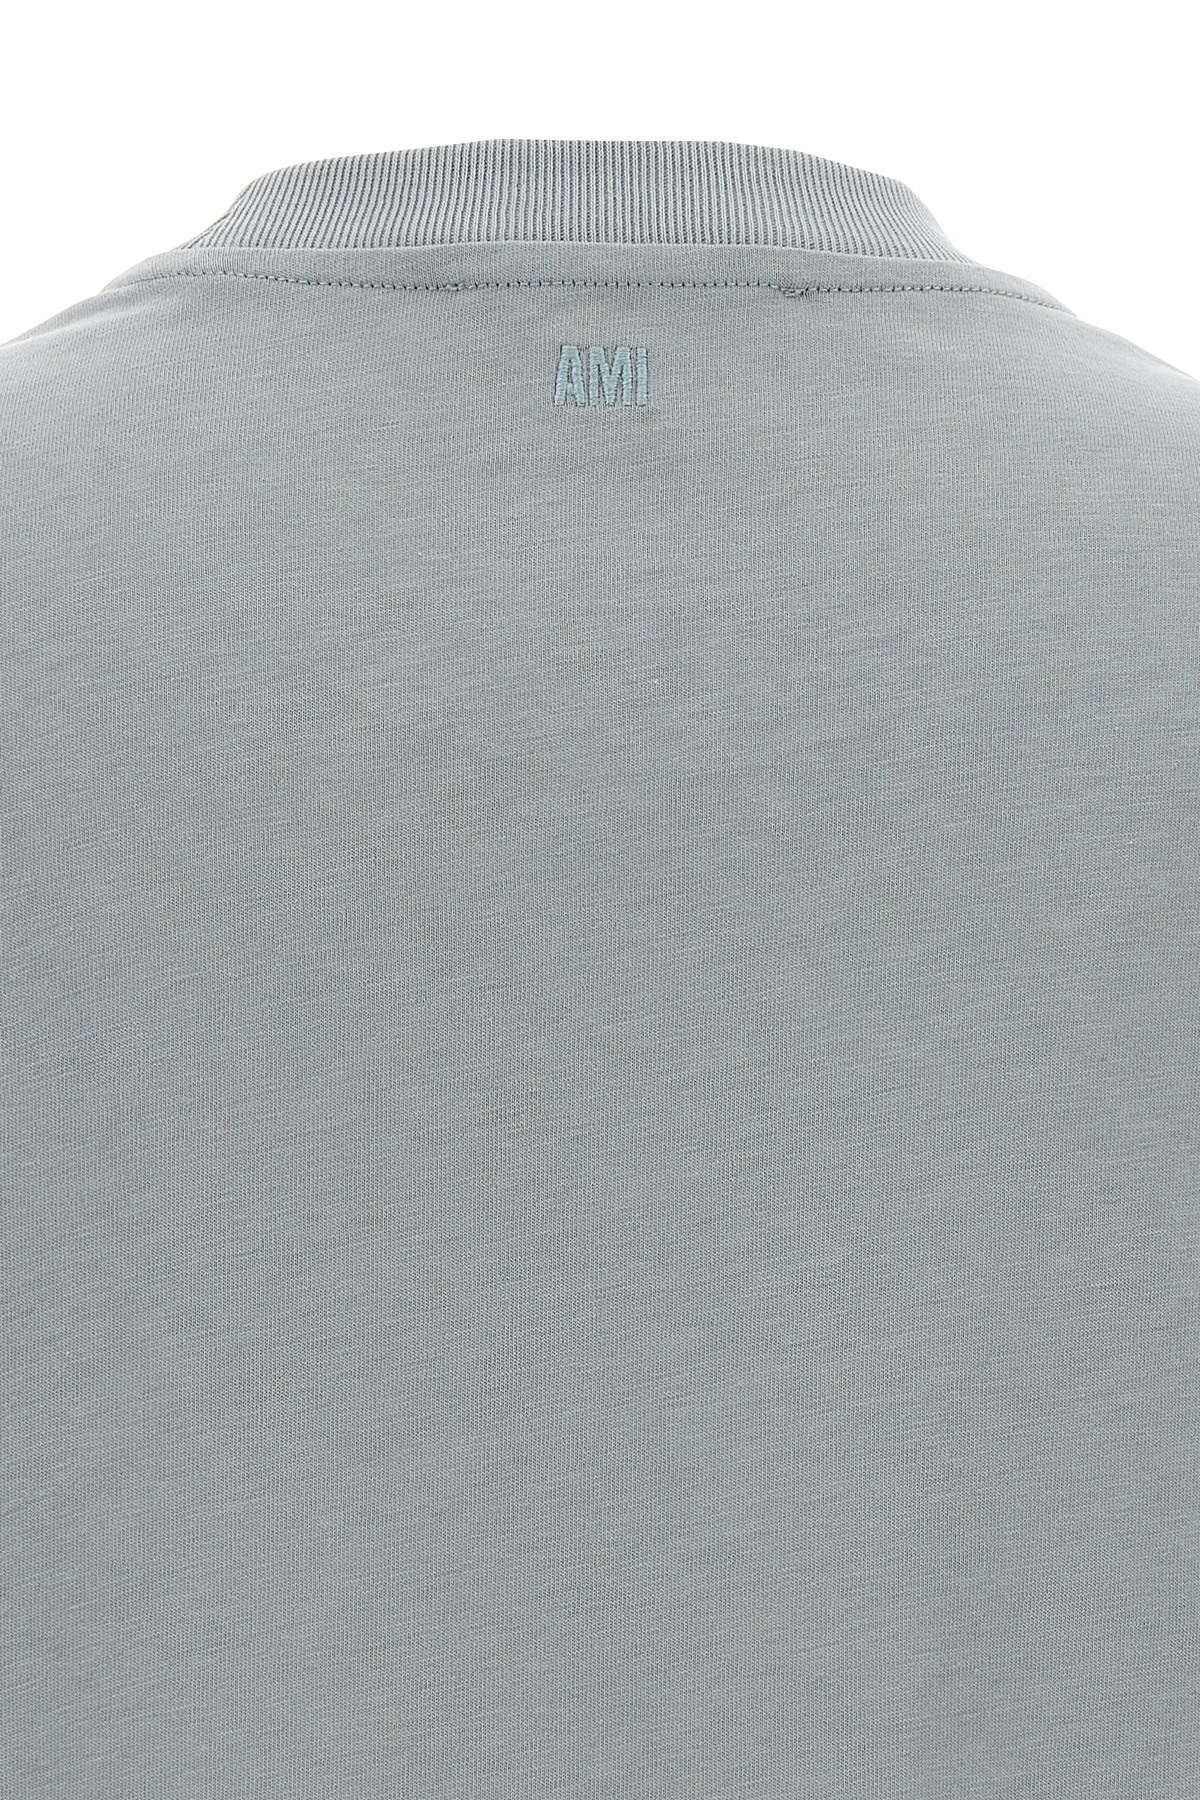 'Ami de Coeur' T-shirt - 5